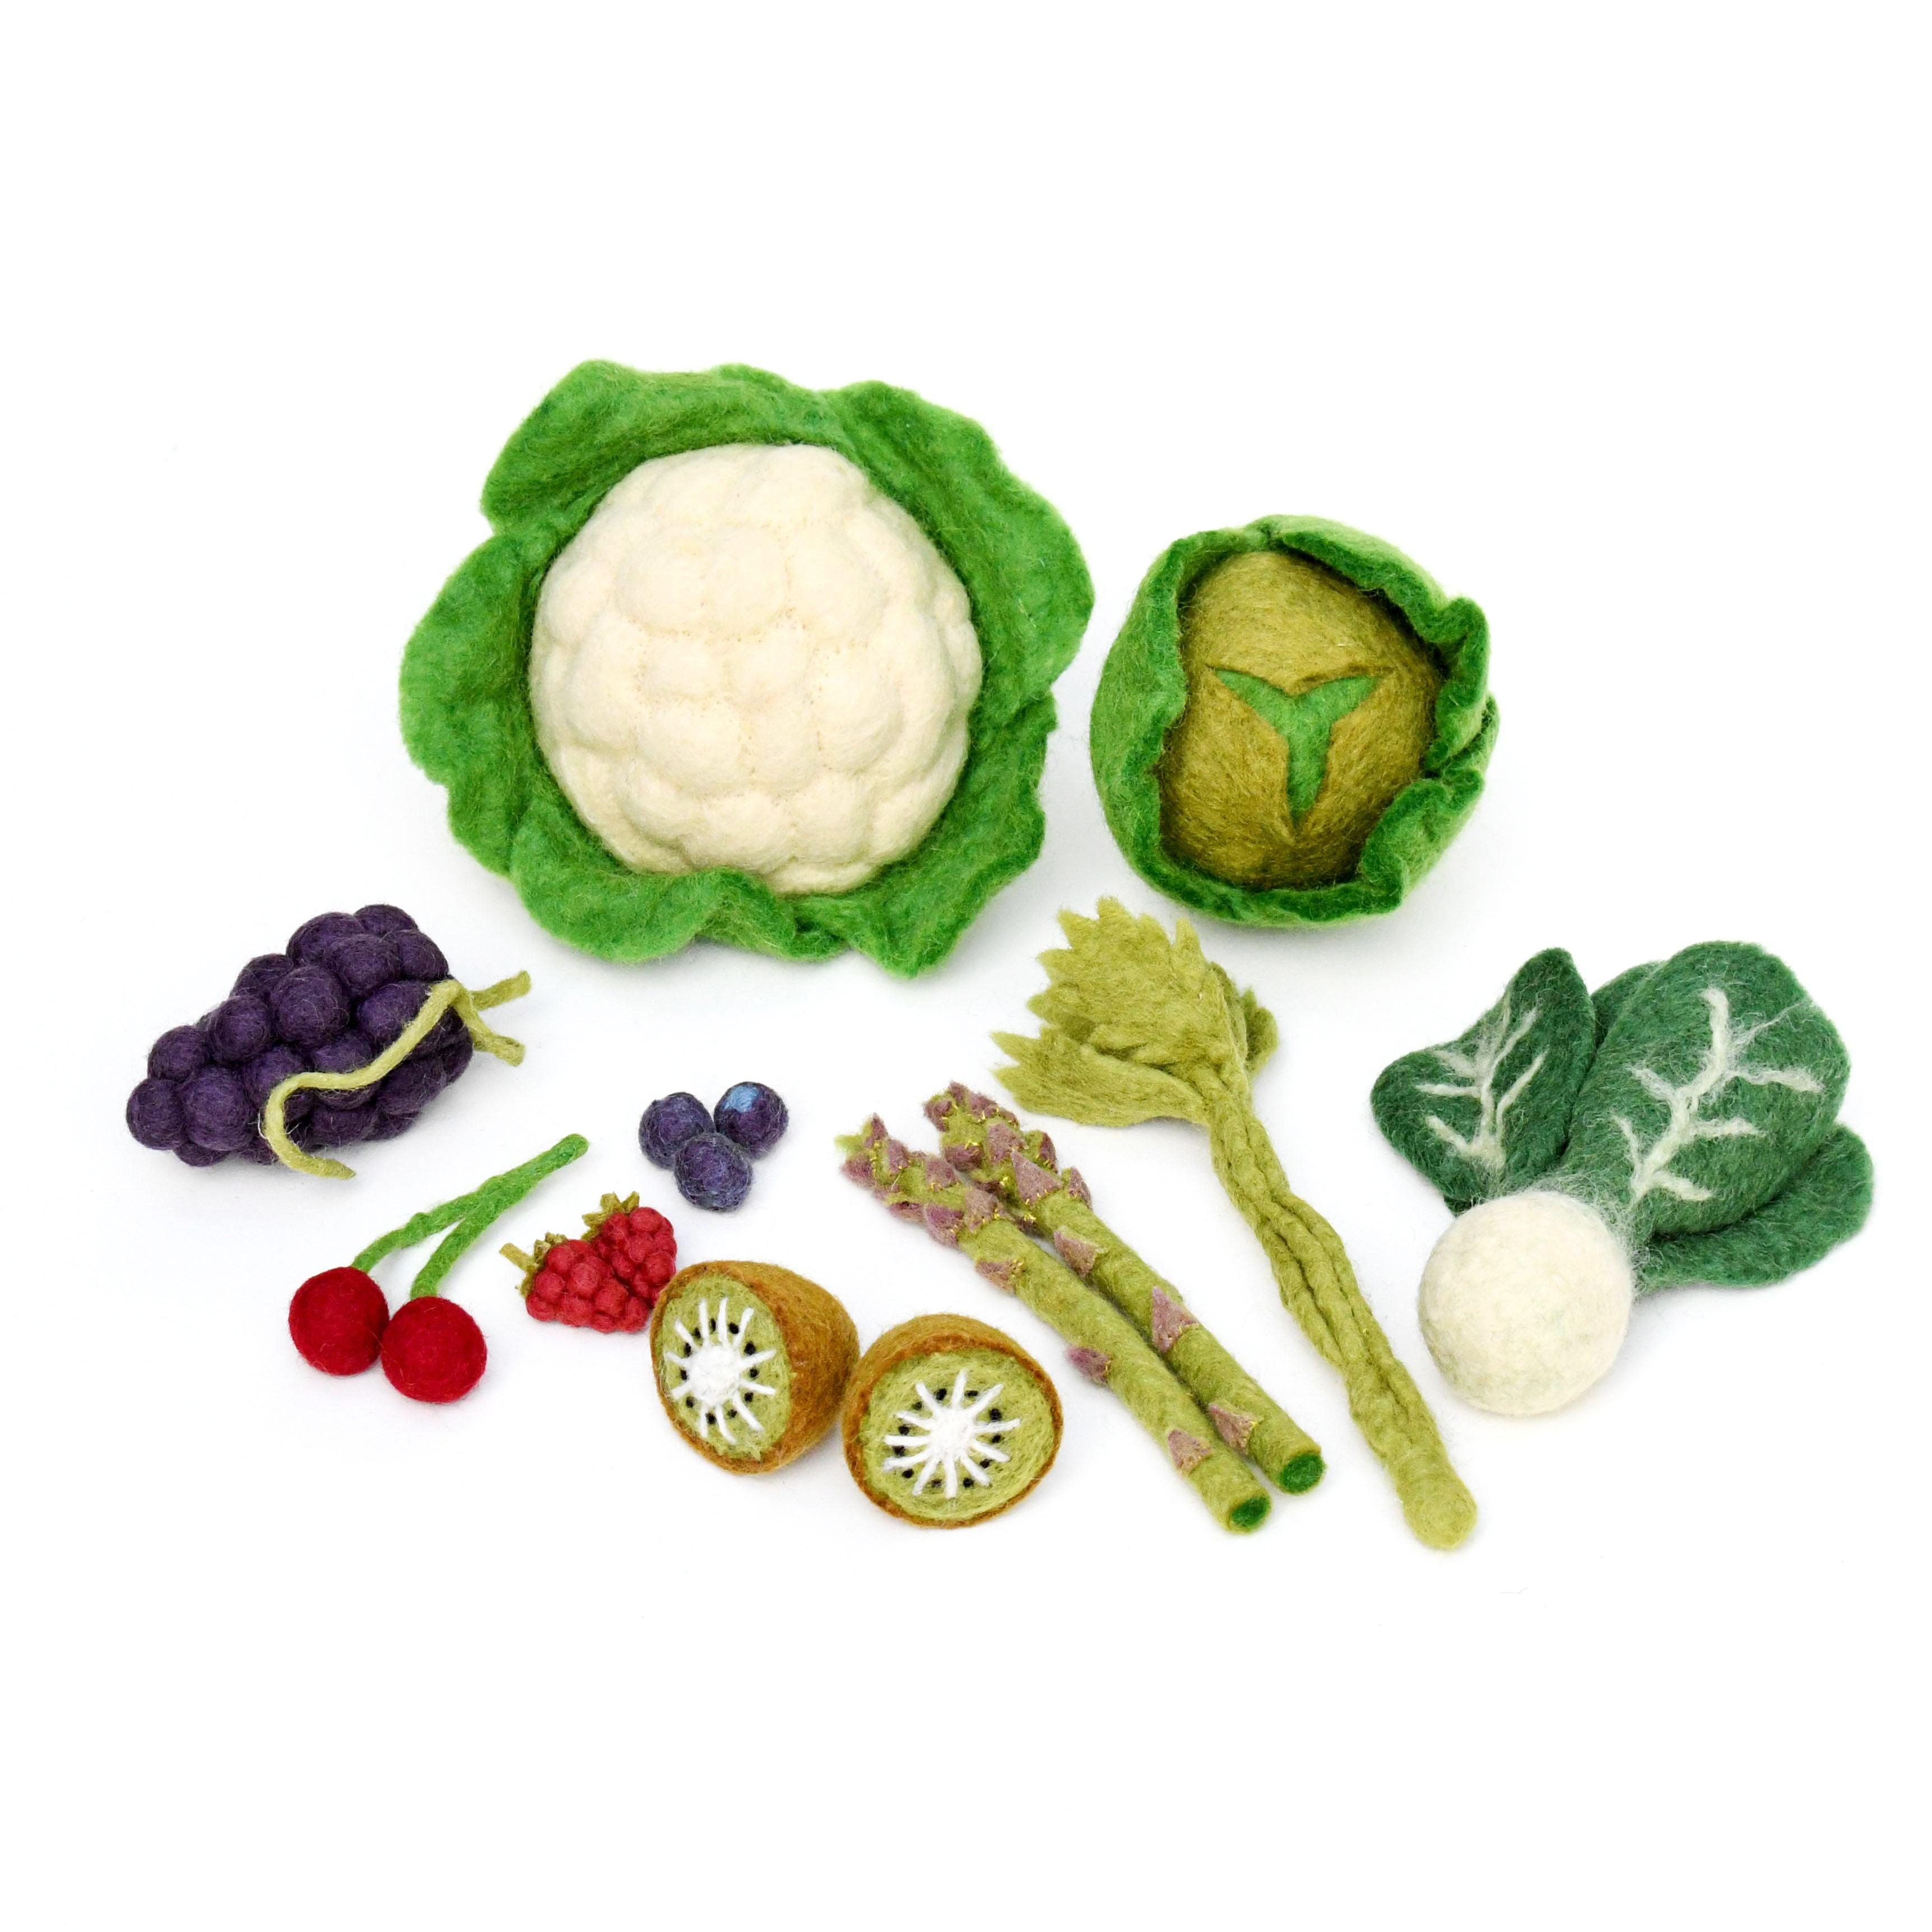 Felt Vegetables and Fruits Set C - 15 pieces - Tara Treasures